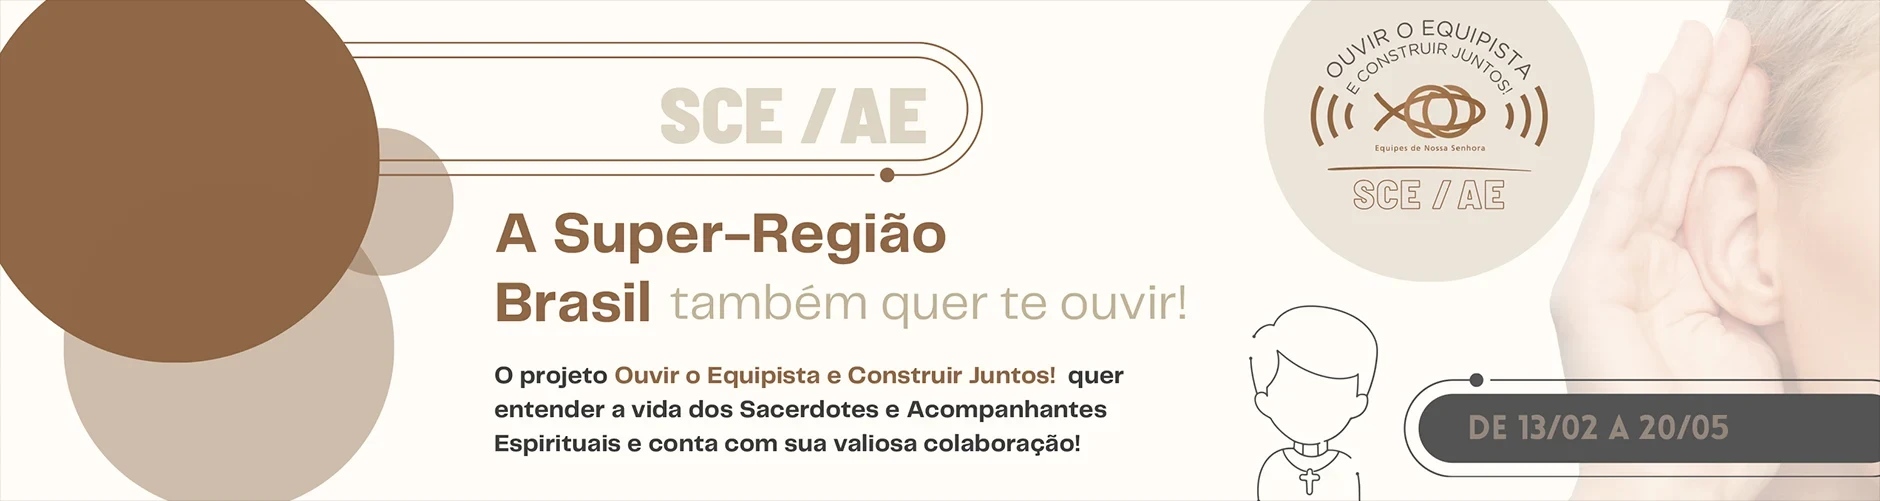 SCE/AE. A Super-Região Brasil também quer te ouvir!